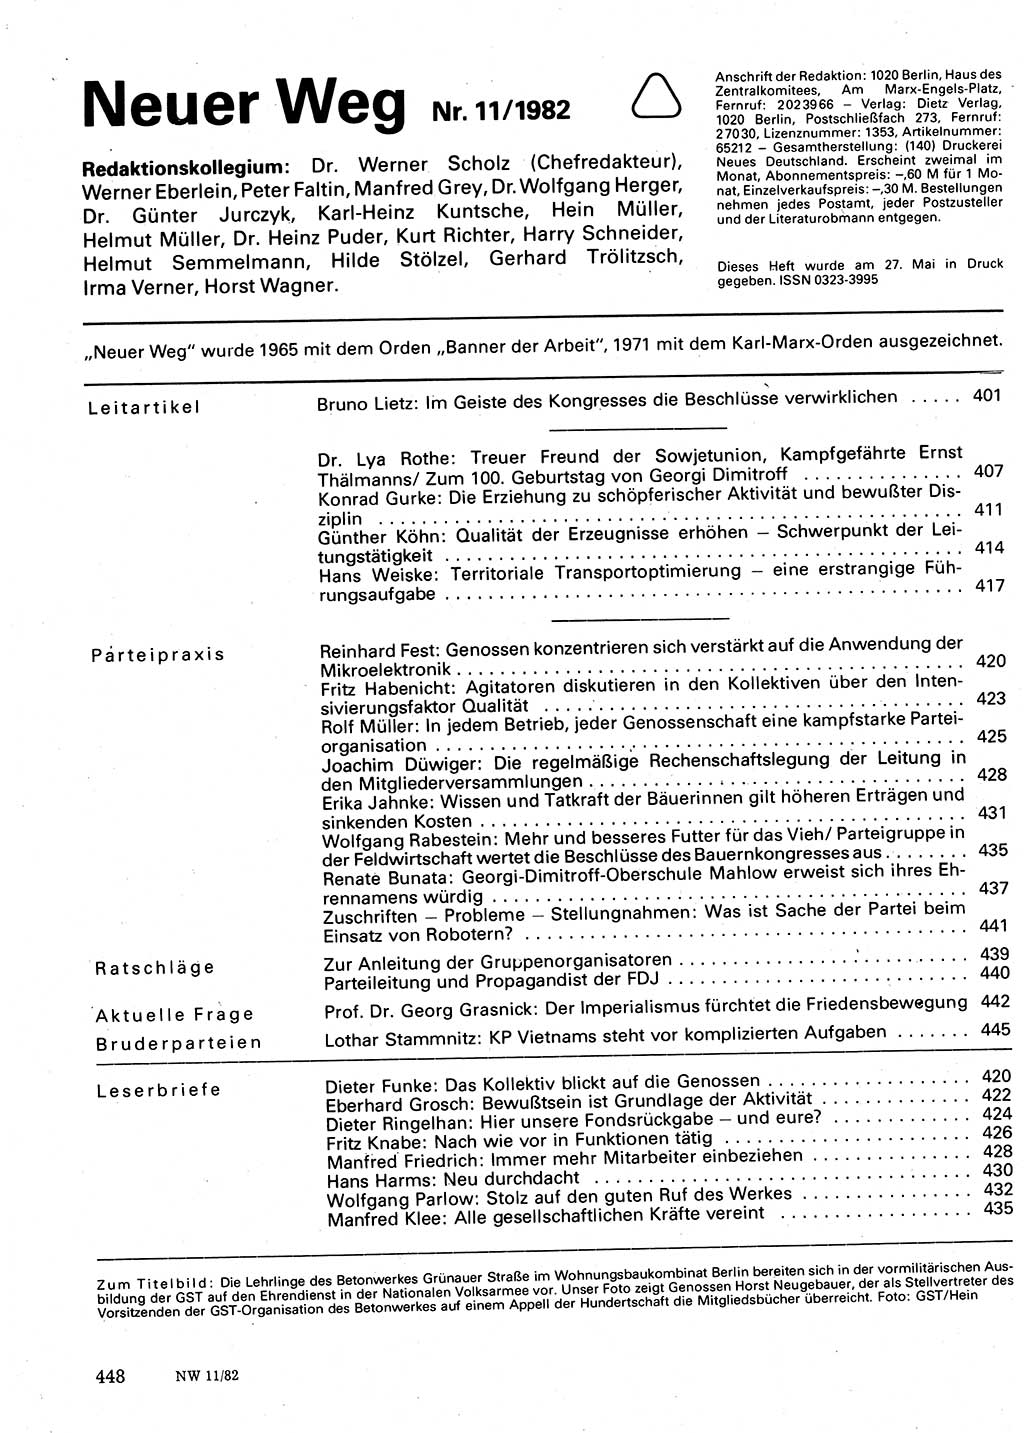 Neuer Weg (NW), Organ des Zentralkomitees (ZK) der SED (Sozialistische Einheitspartei Deutschlands) für Fragen des Parteilebens, 37. Jahrgang [Deutsche Demokratische Republik (DDR)] 1982, Seite 448 (NW ZK SED DDR 1982, S. 448)